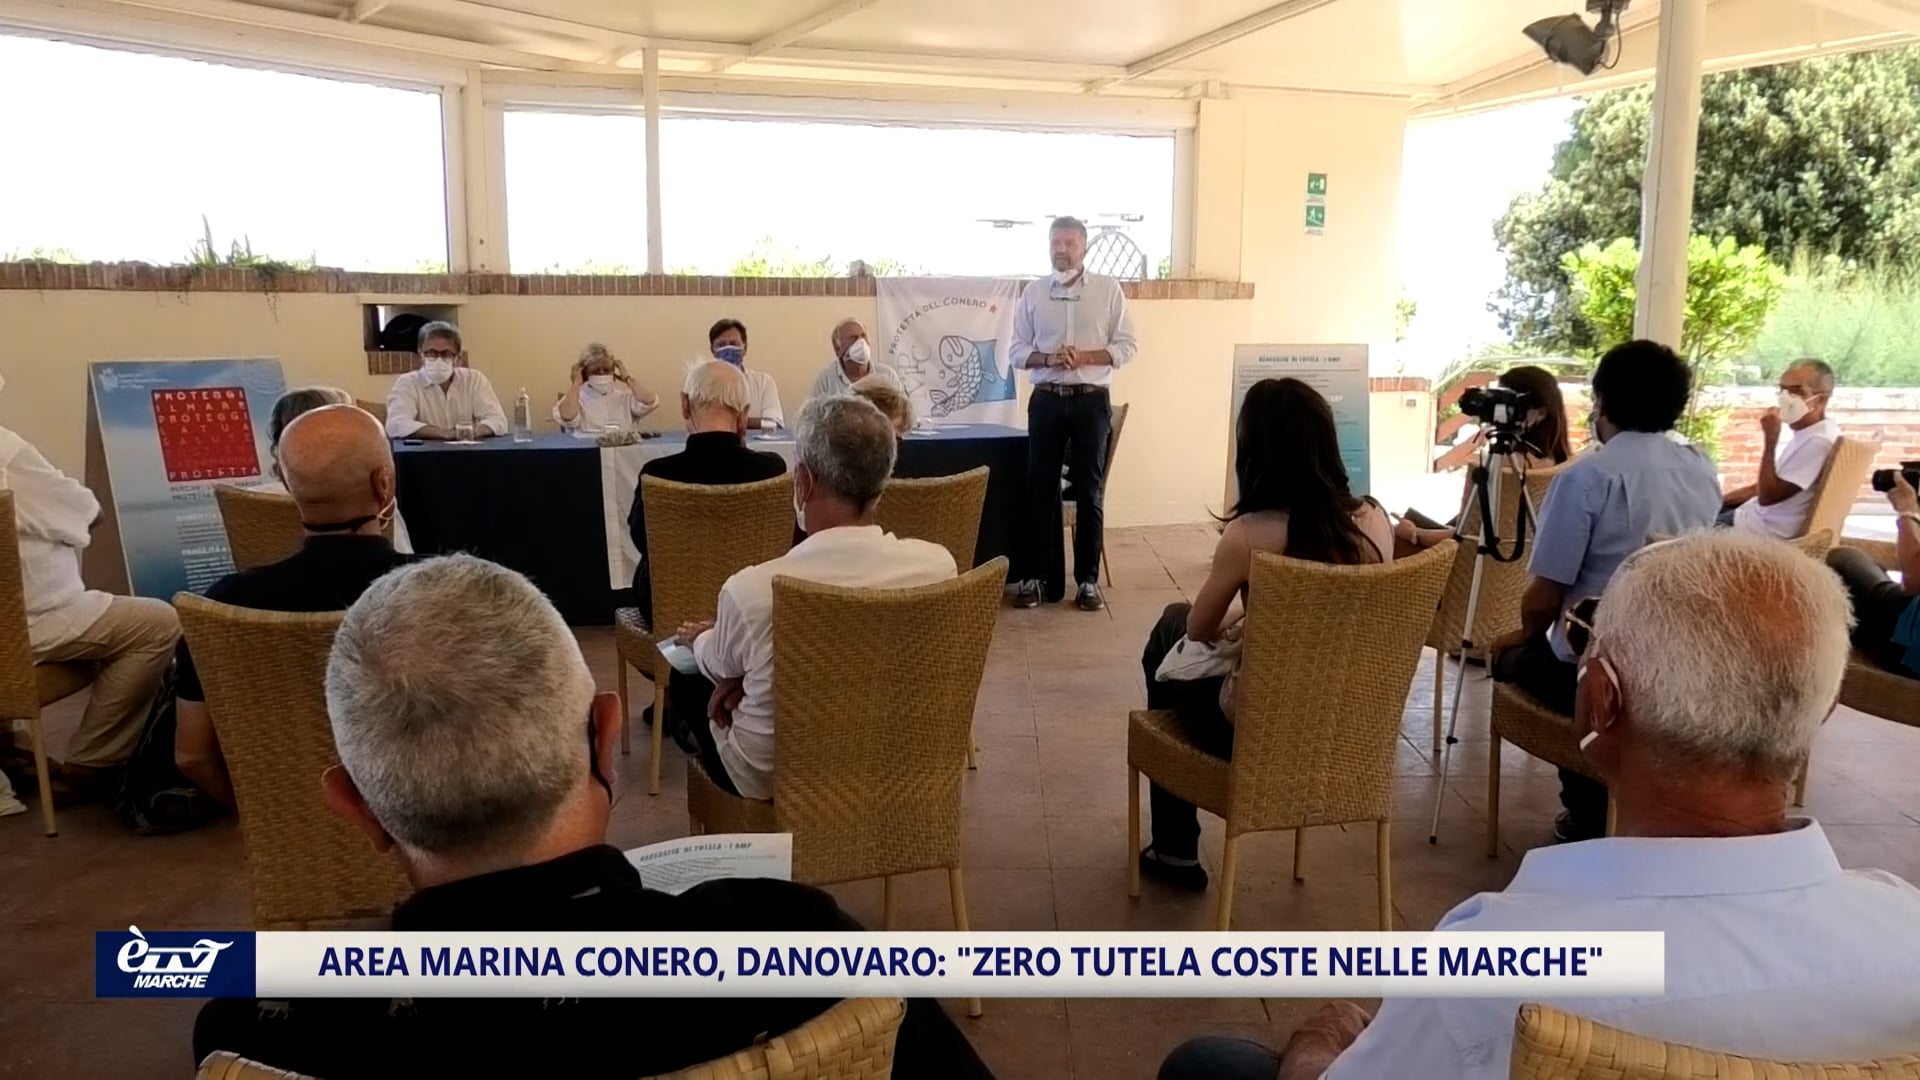 Area marina Conero, Prof. Danovaro: “Zero tutela coste nelle Marche”